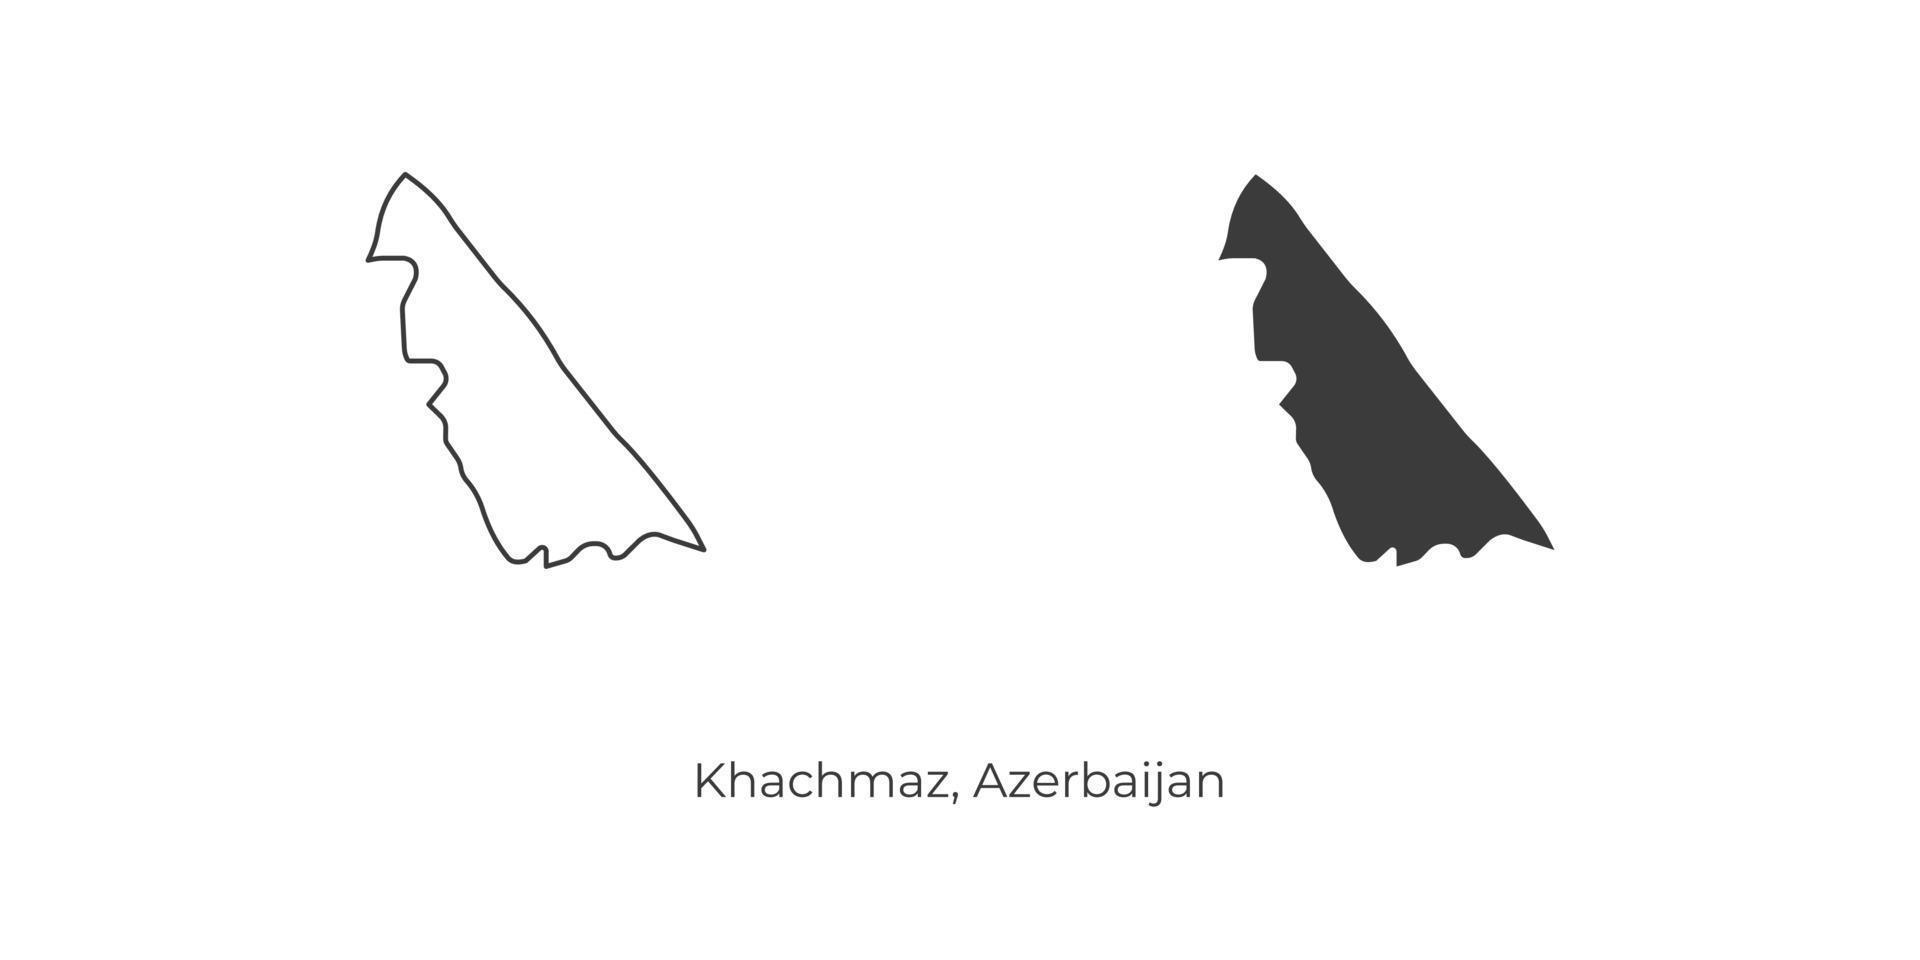 einfache Vektorillustration der Khachmaz-Karte, Aserbaidschan. vektor